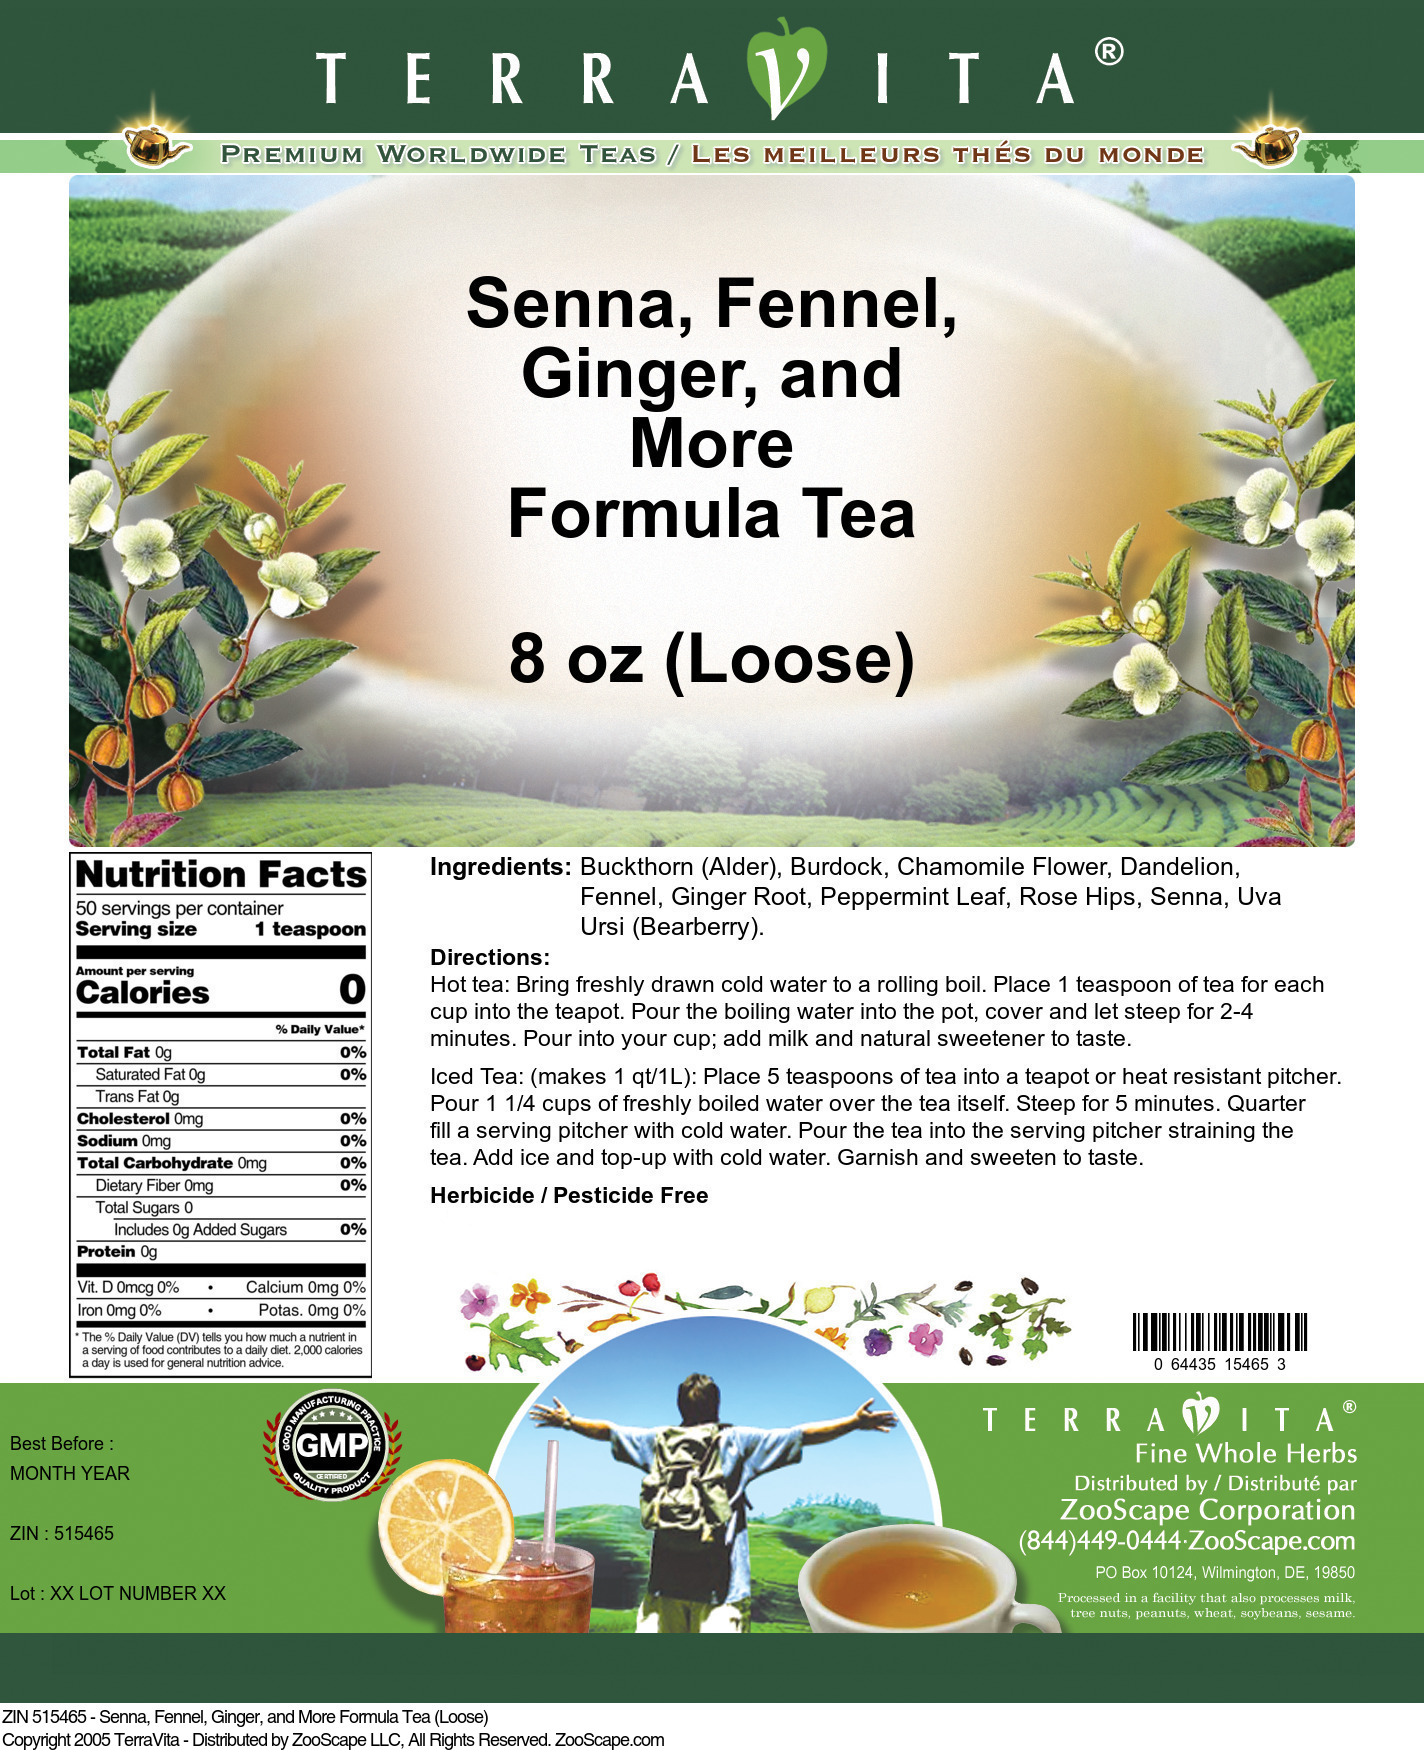 Senna, Fennel, Ginger, and More Formula Tea (Loose) - Label